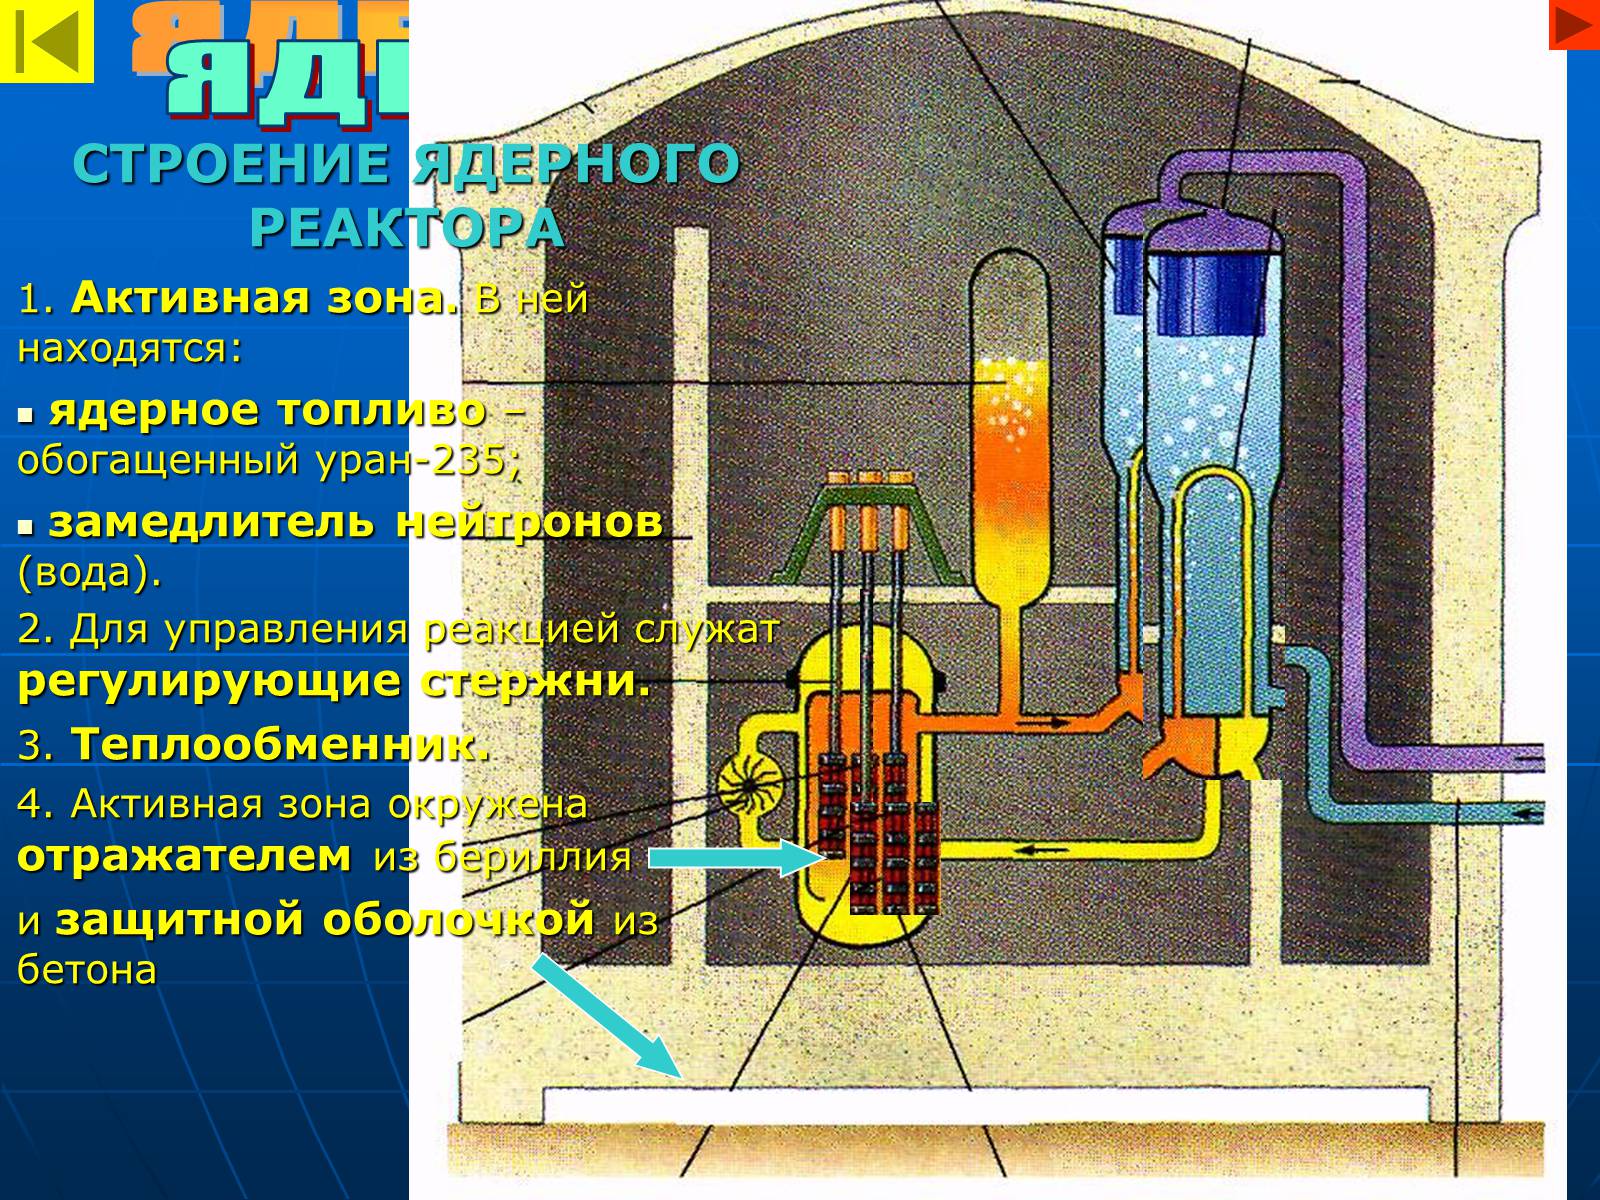 Какое топливо в ядерных реакторах